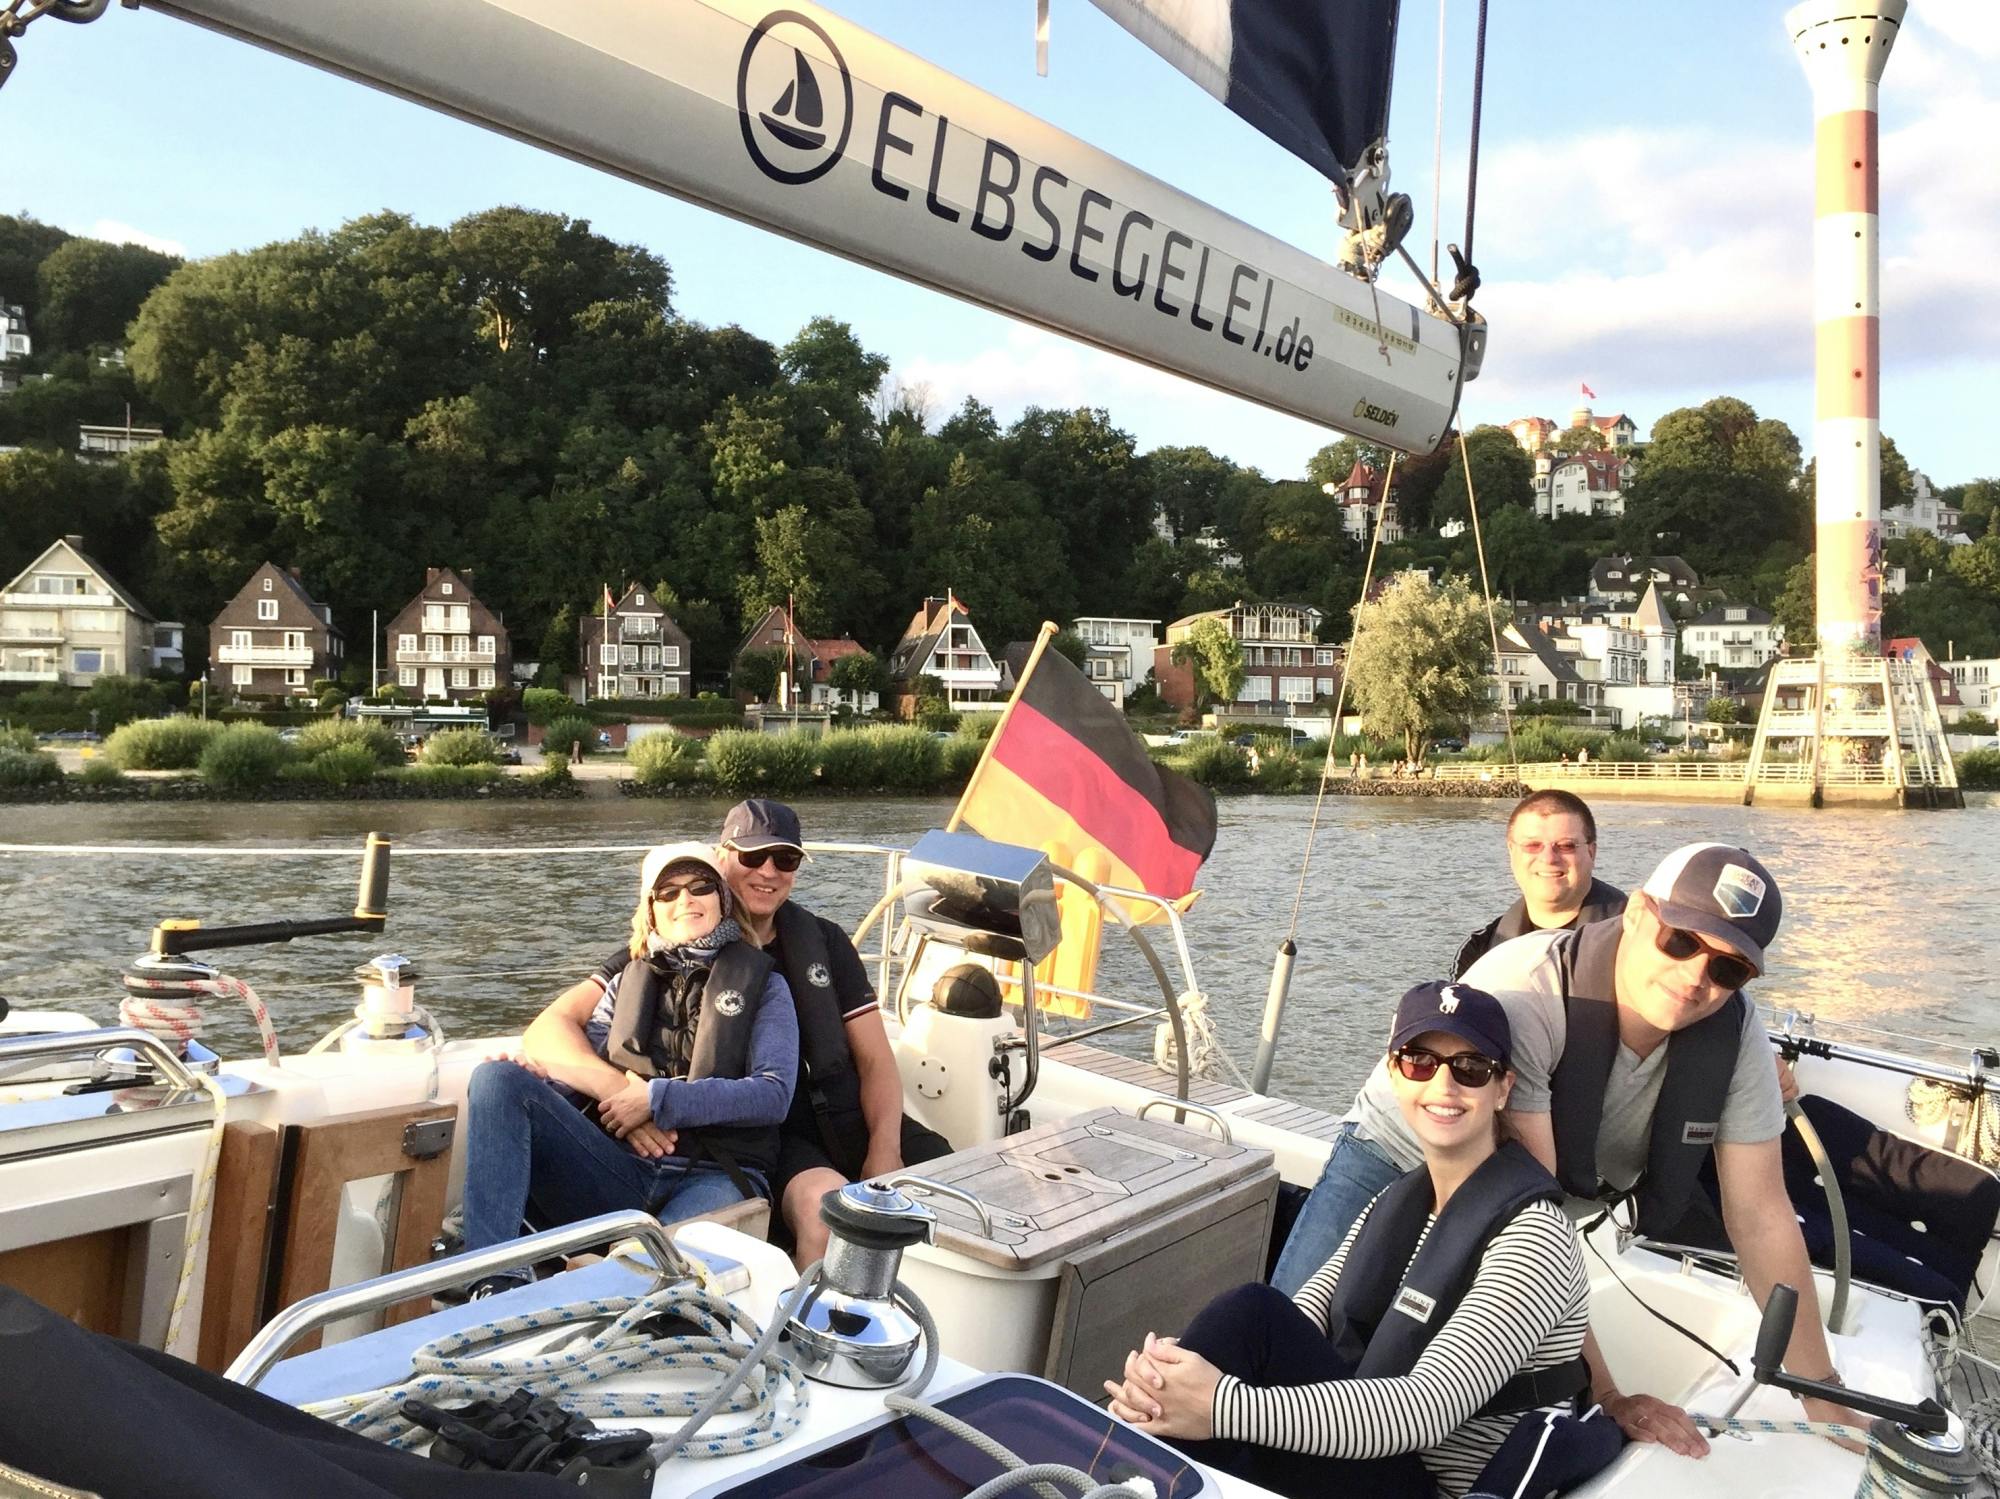 Autentyczny rejs żeglarski do bram Hamburga z Wedela